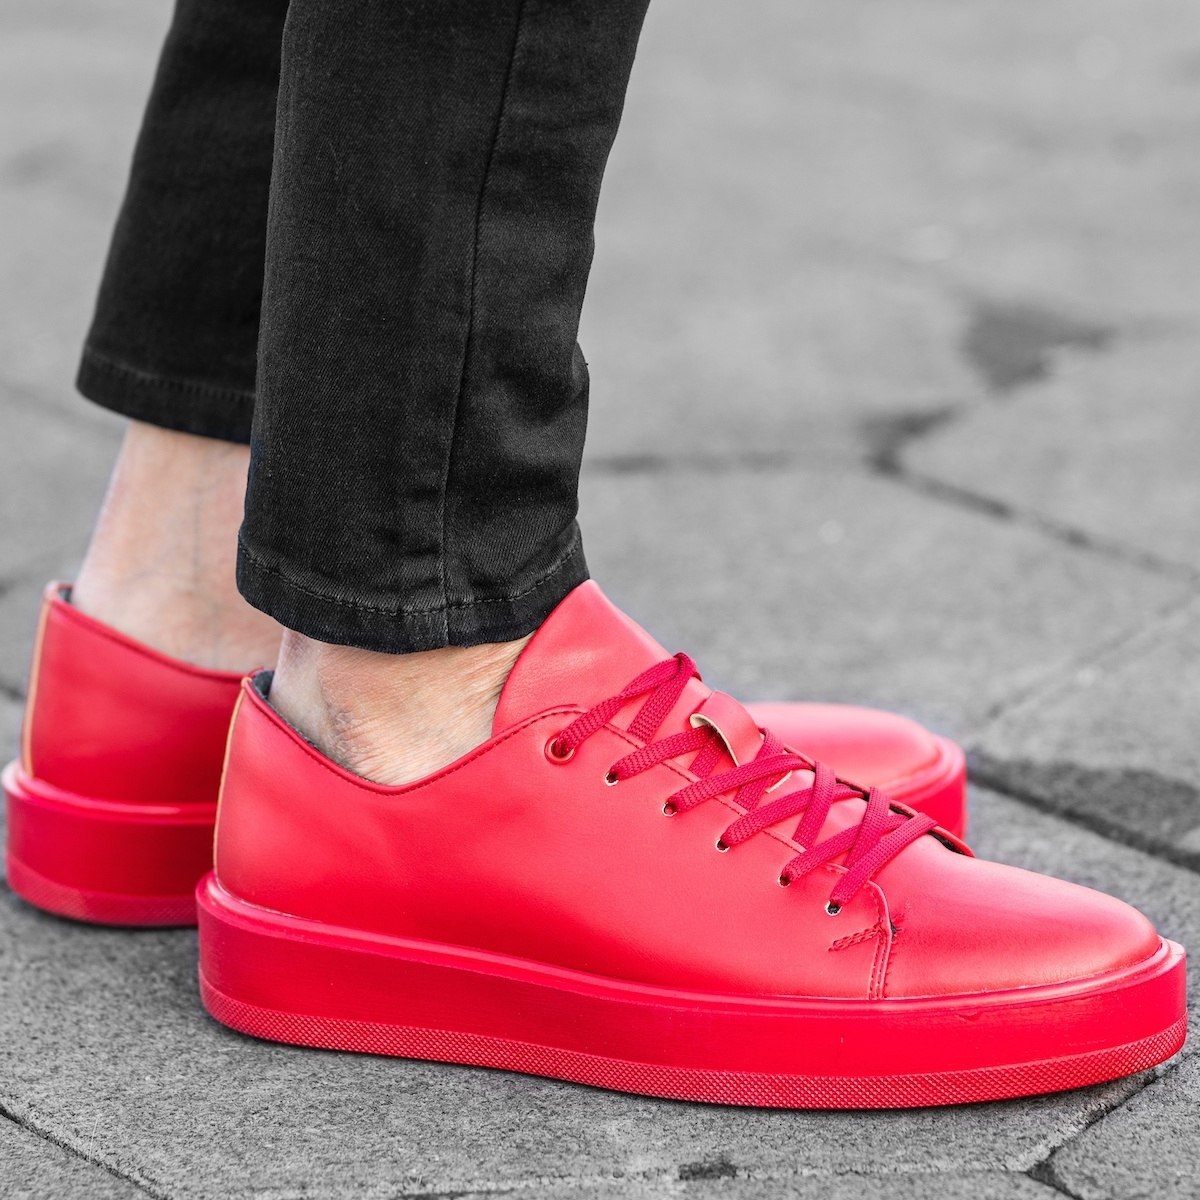 Men's Flat Sole Sneakers In Red